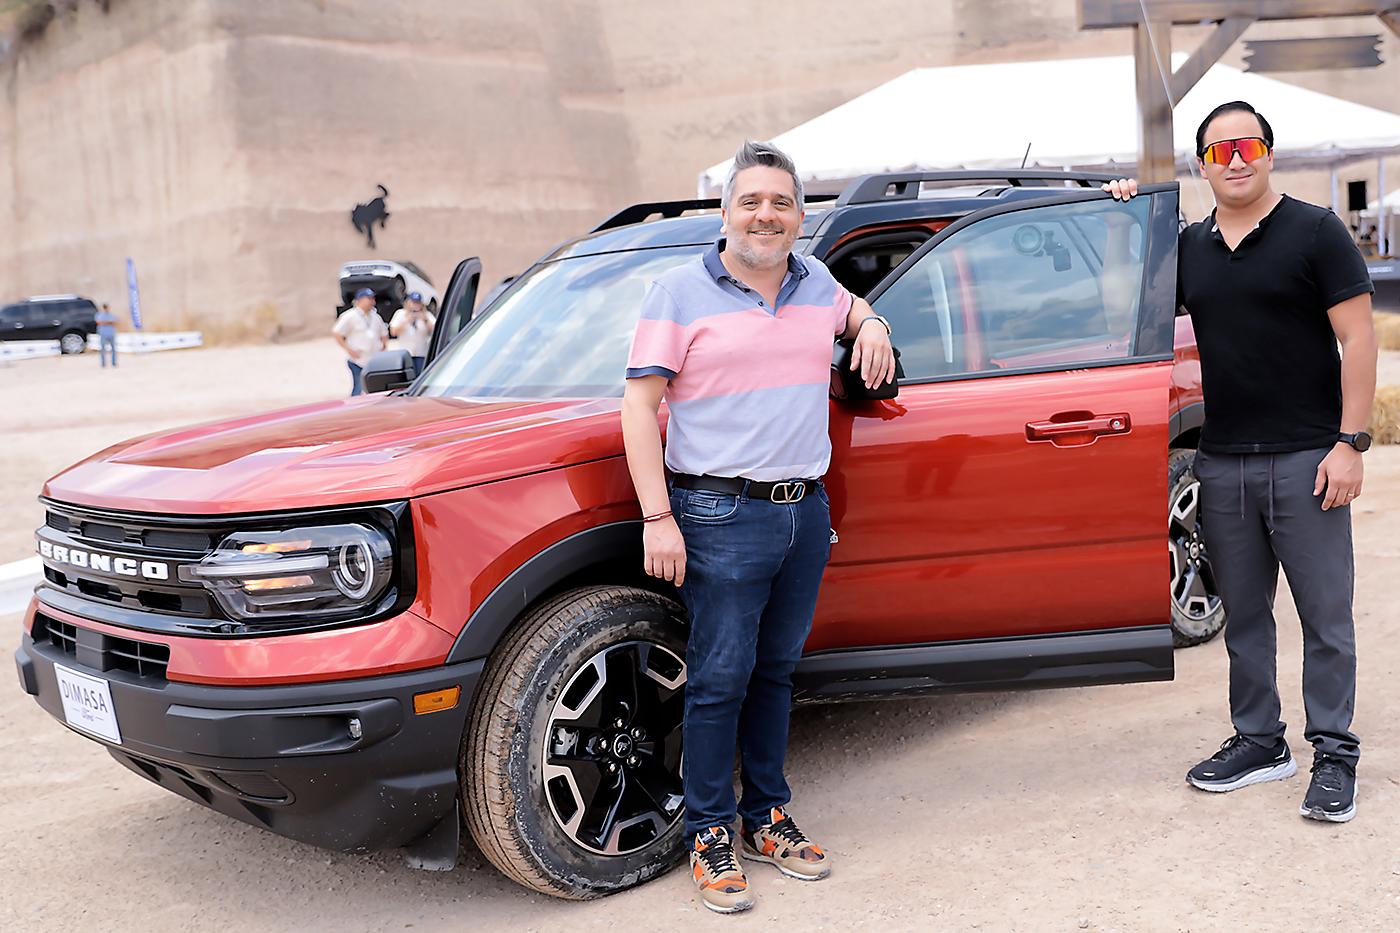 Dimasa Ford realiza una “Bronco Experience”